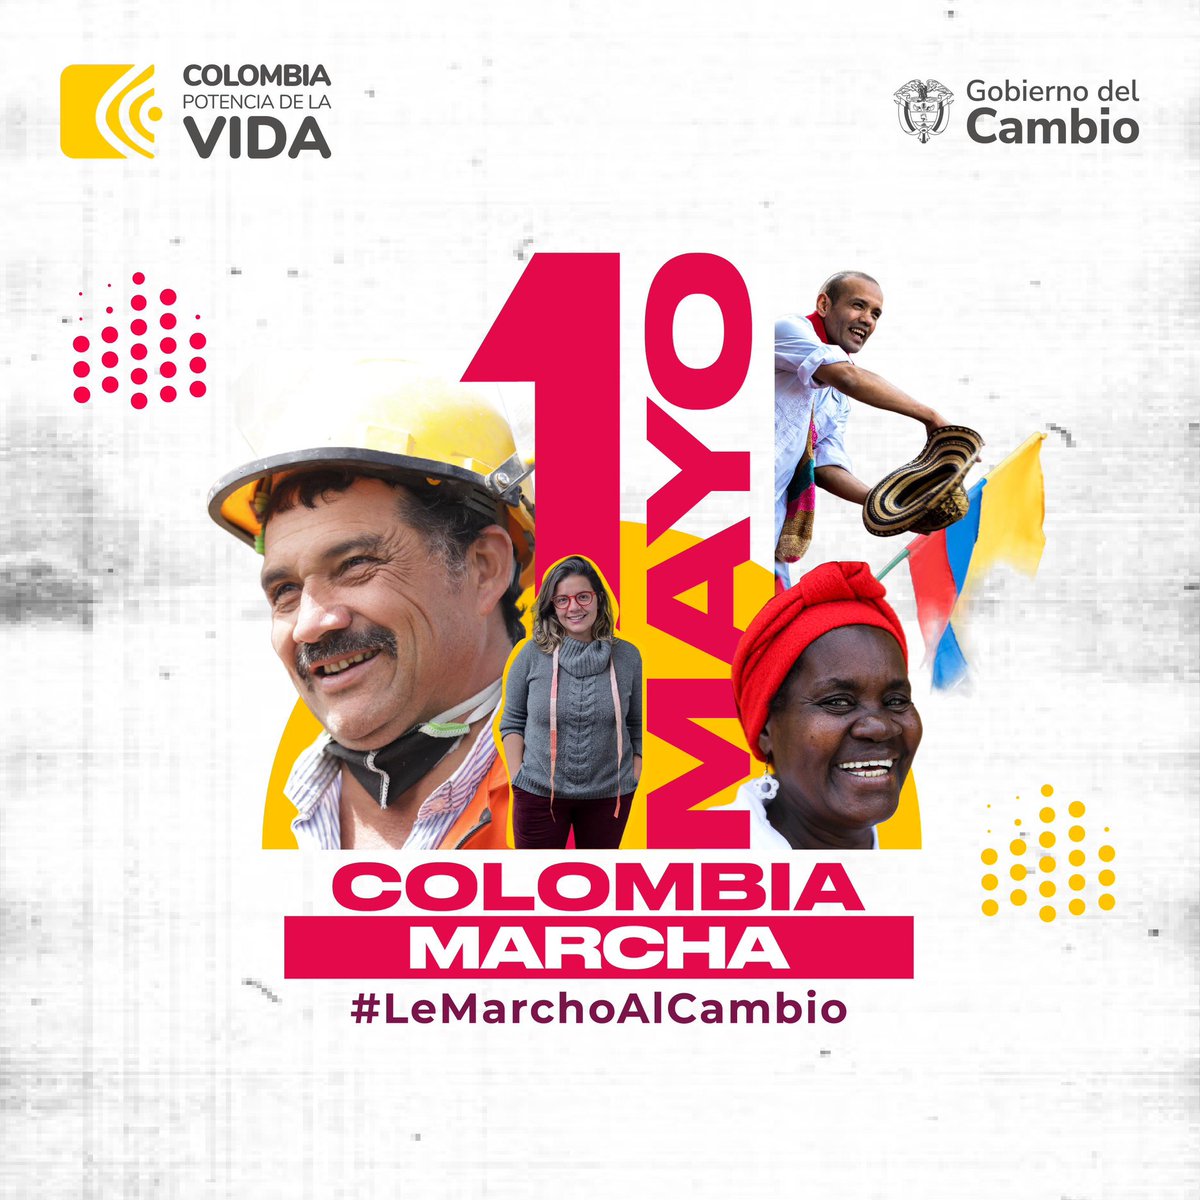 Hoy #LeMarchoAlCambio.

Juntos nos moveremos por los derechos de todas y todos los colombianos, porque solo con un pueblo vivo podremos hacer de Colombia una Potencia Mundial de la Vida.

A las calles por el trabajo, la vida, la Paz, la democracia y el mandato popular.